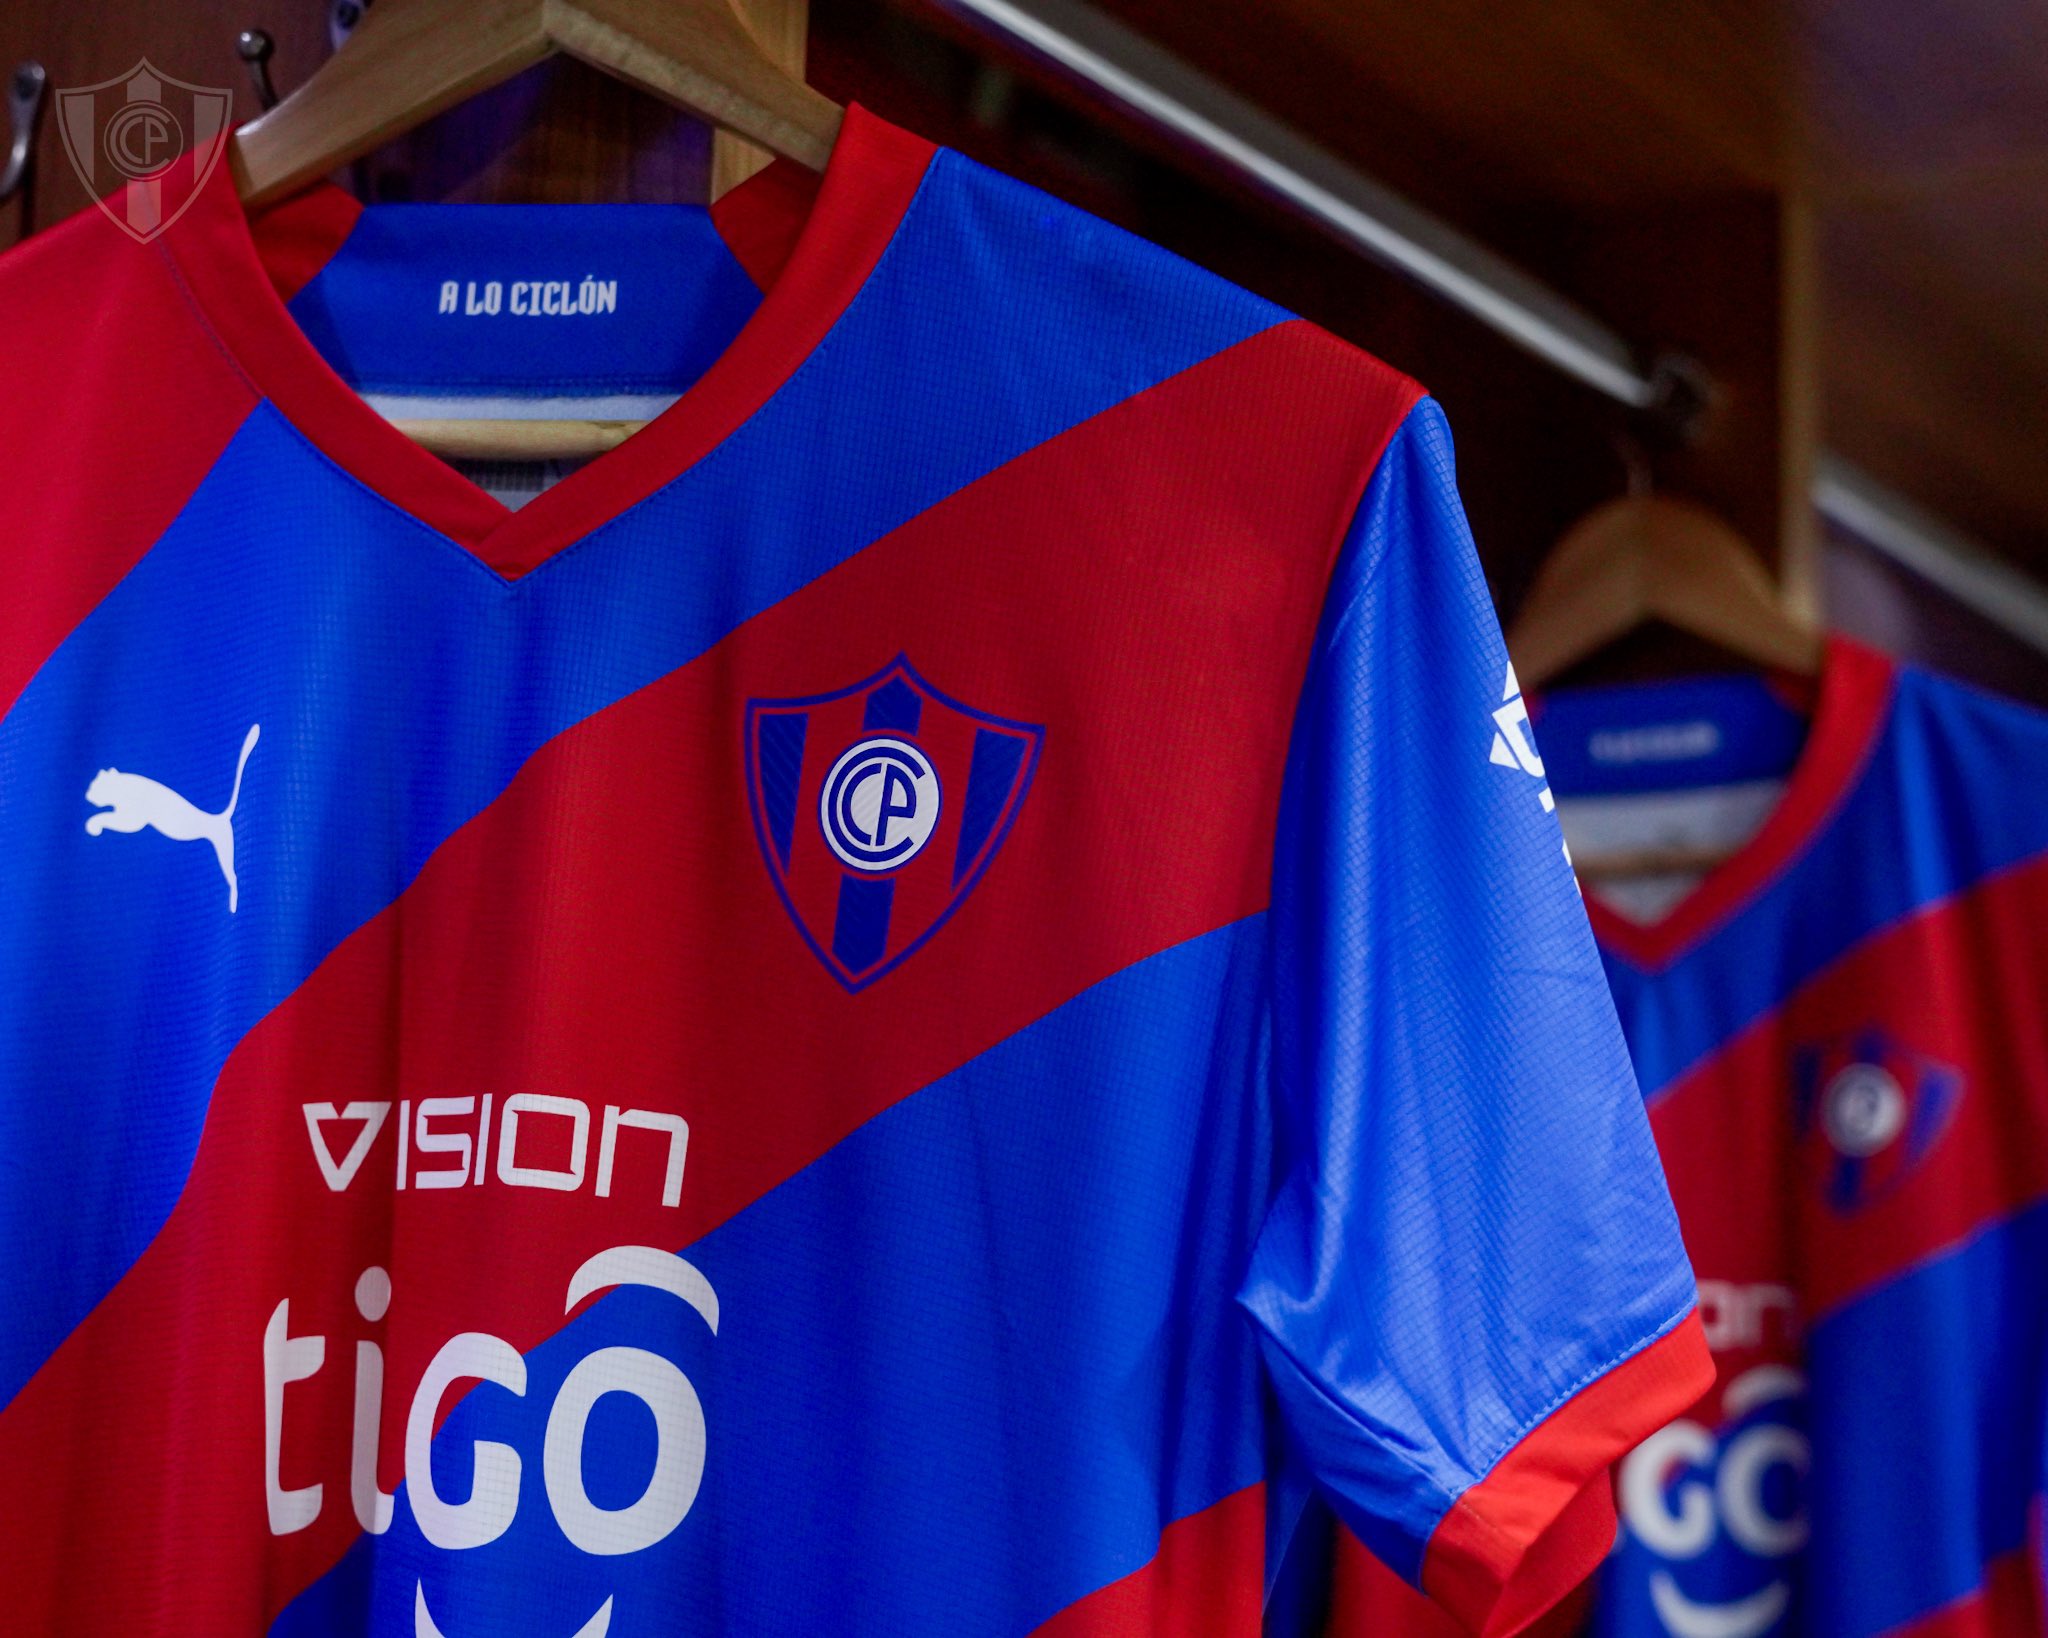 Camiseta futbol - Remera Oficial Cerro Futbol Club – charruashop